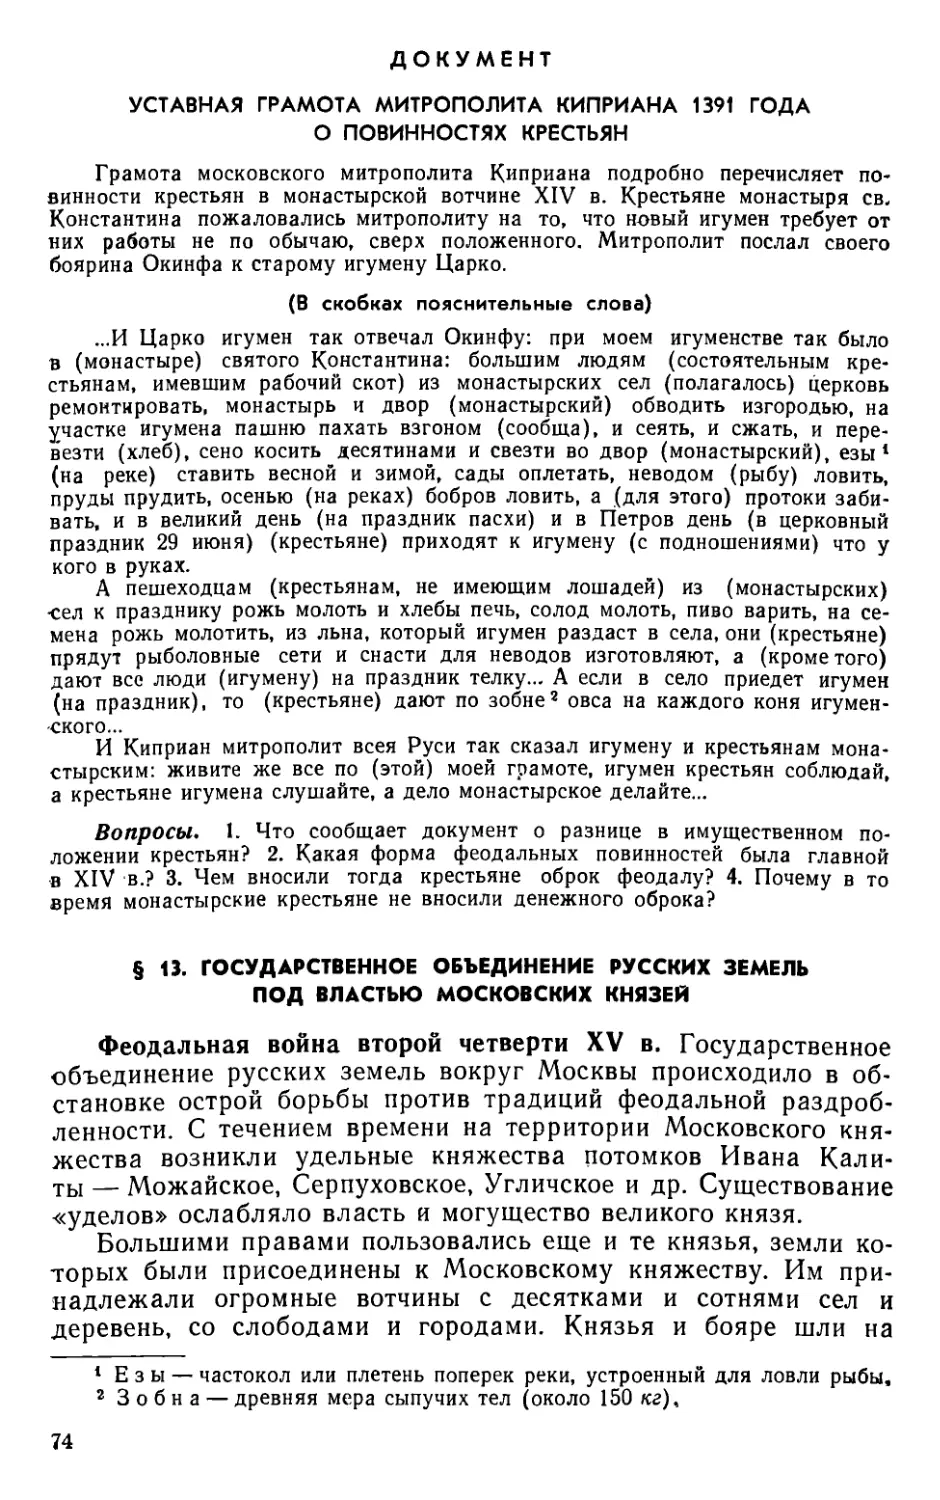 § 13. Государственное объединение русских земель под властью московских князей